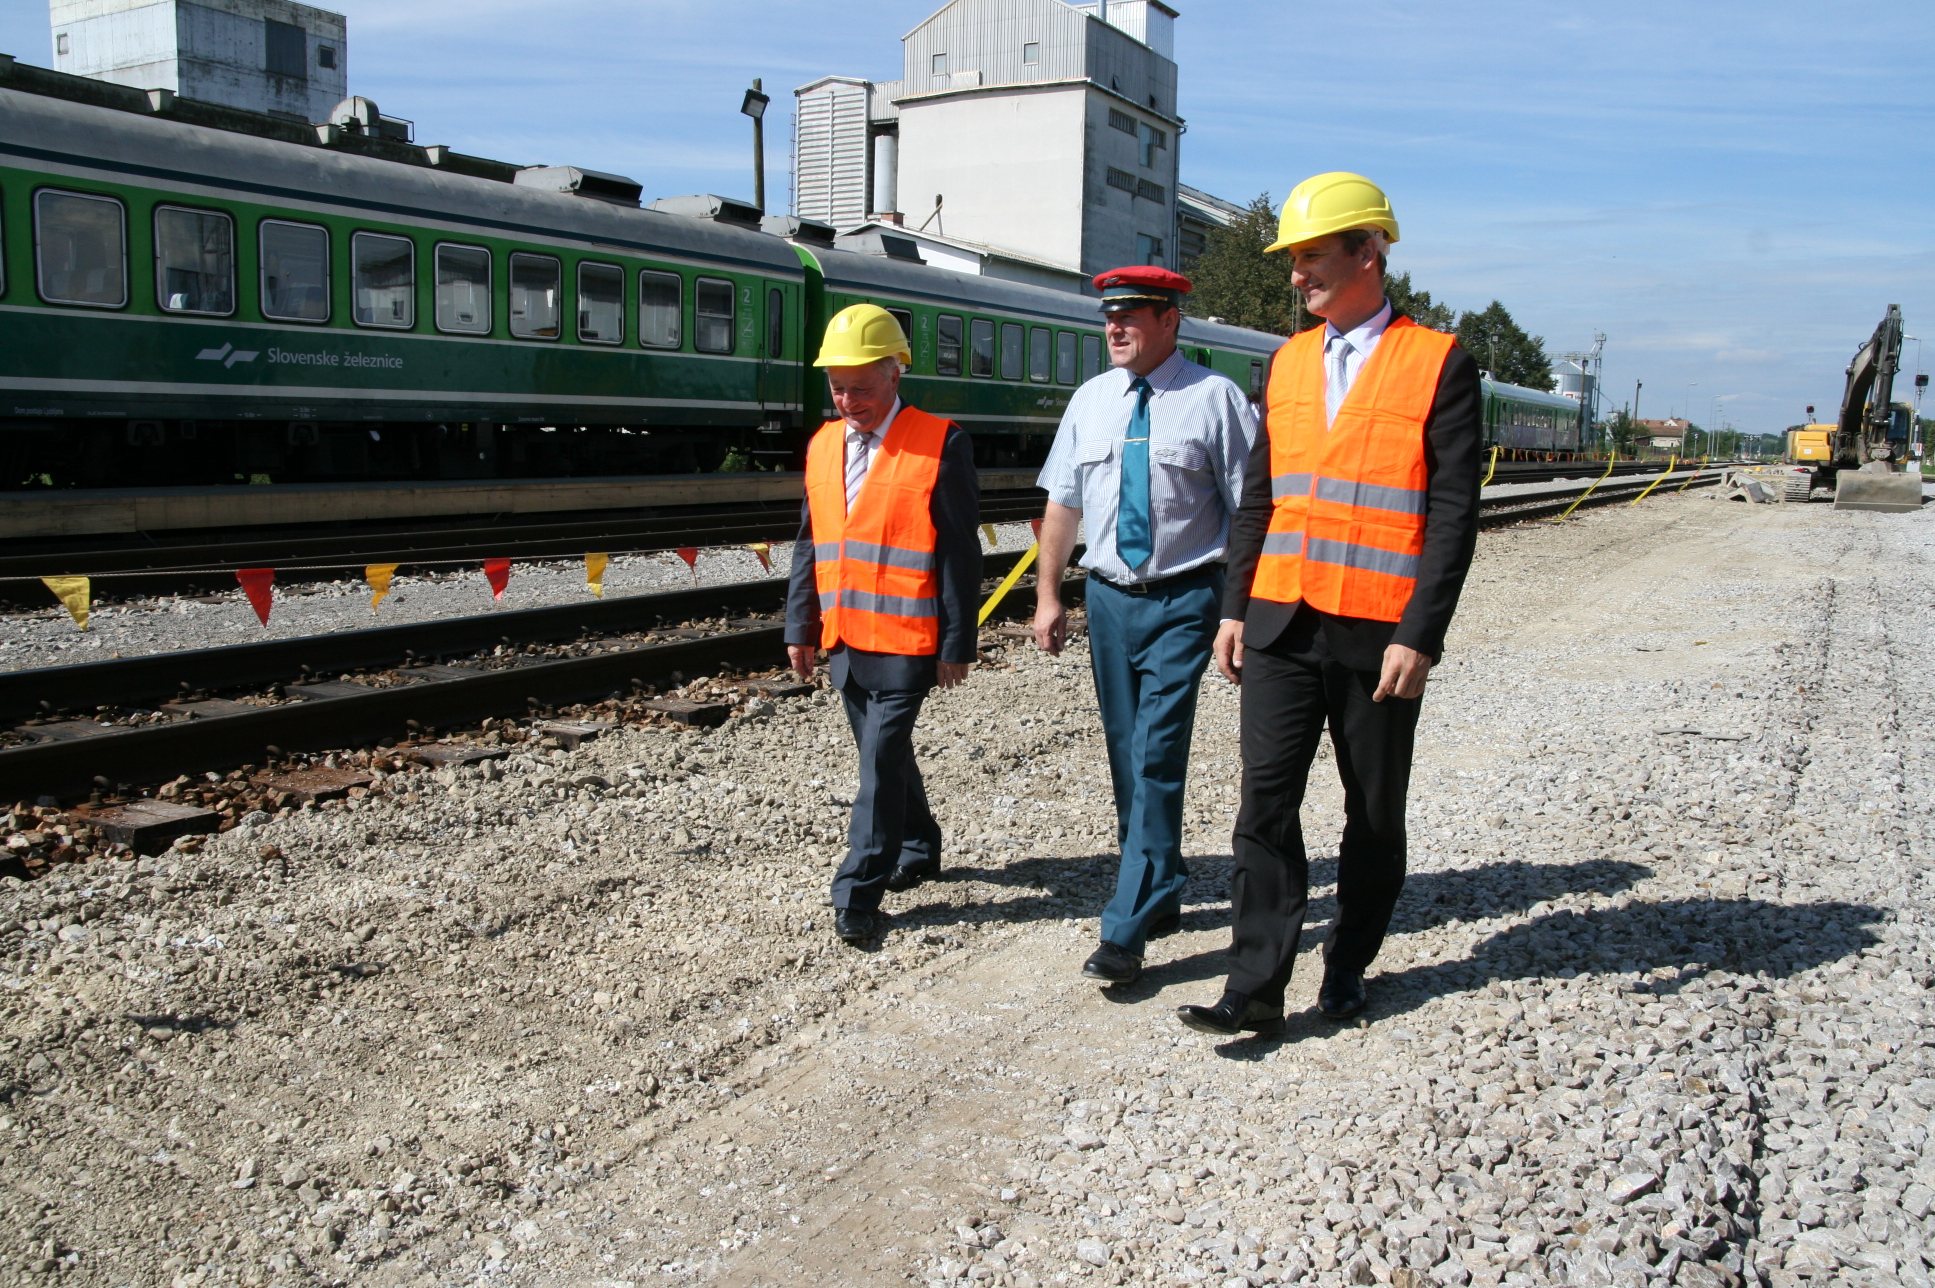  Ministra Stanko Stepišnik in Samo Omerzel sta se sprehodila po železniški progi v Ljutomeru.